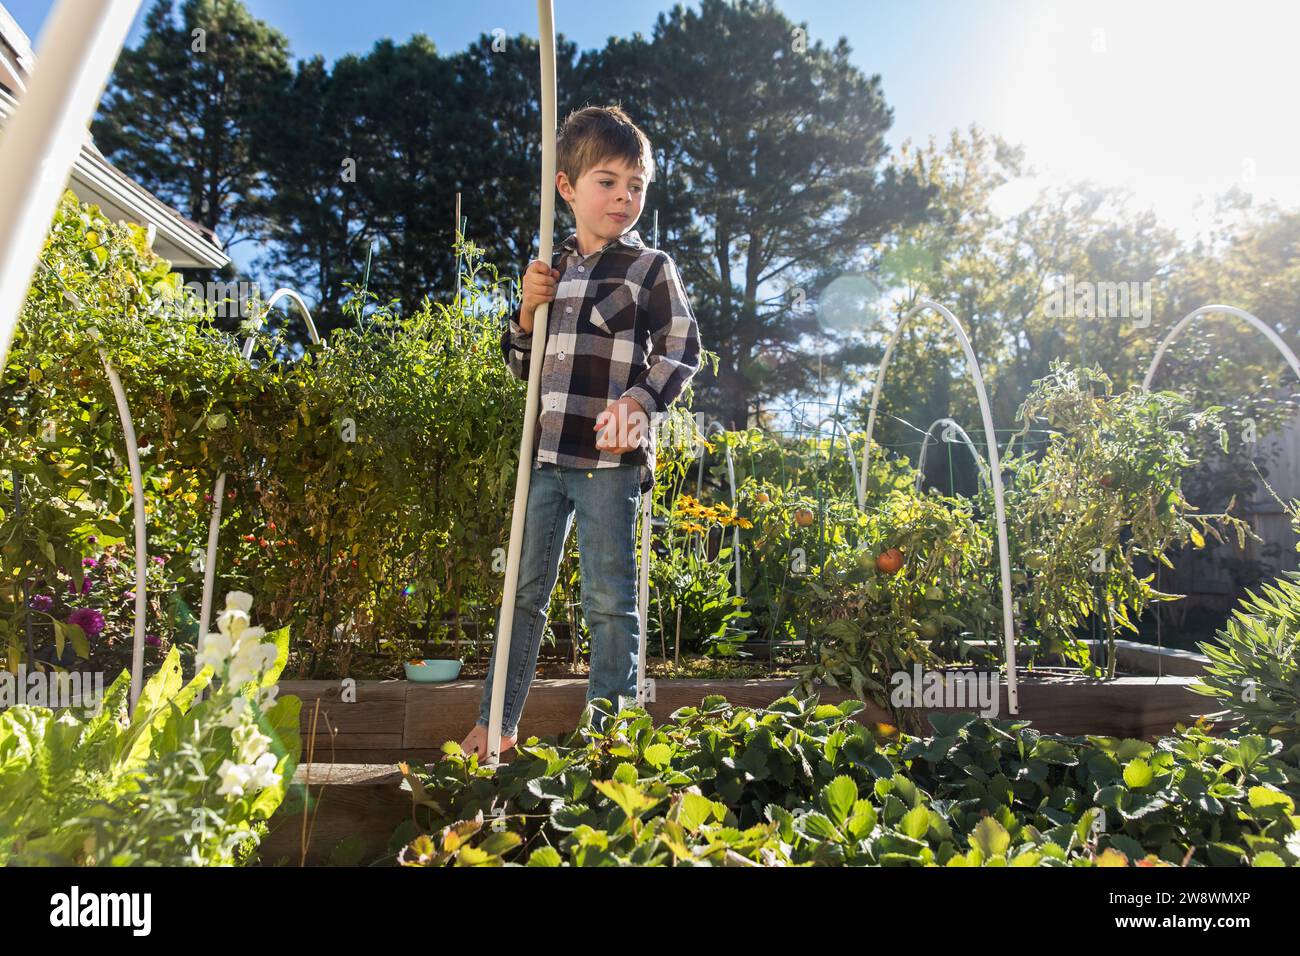 Junge, der auf seinen Garten im Garten blickt, mit strahlender Sonne Stockfoto